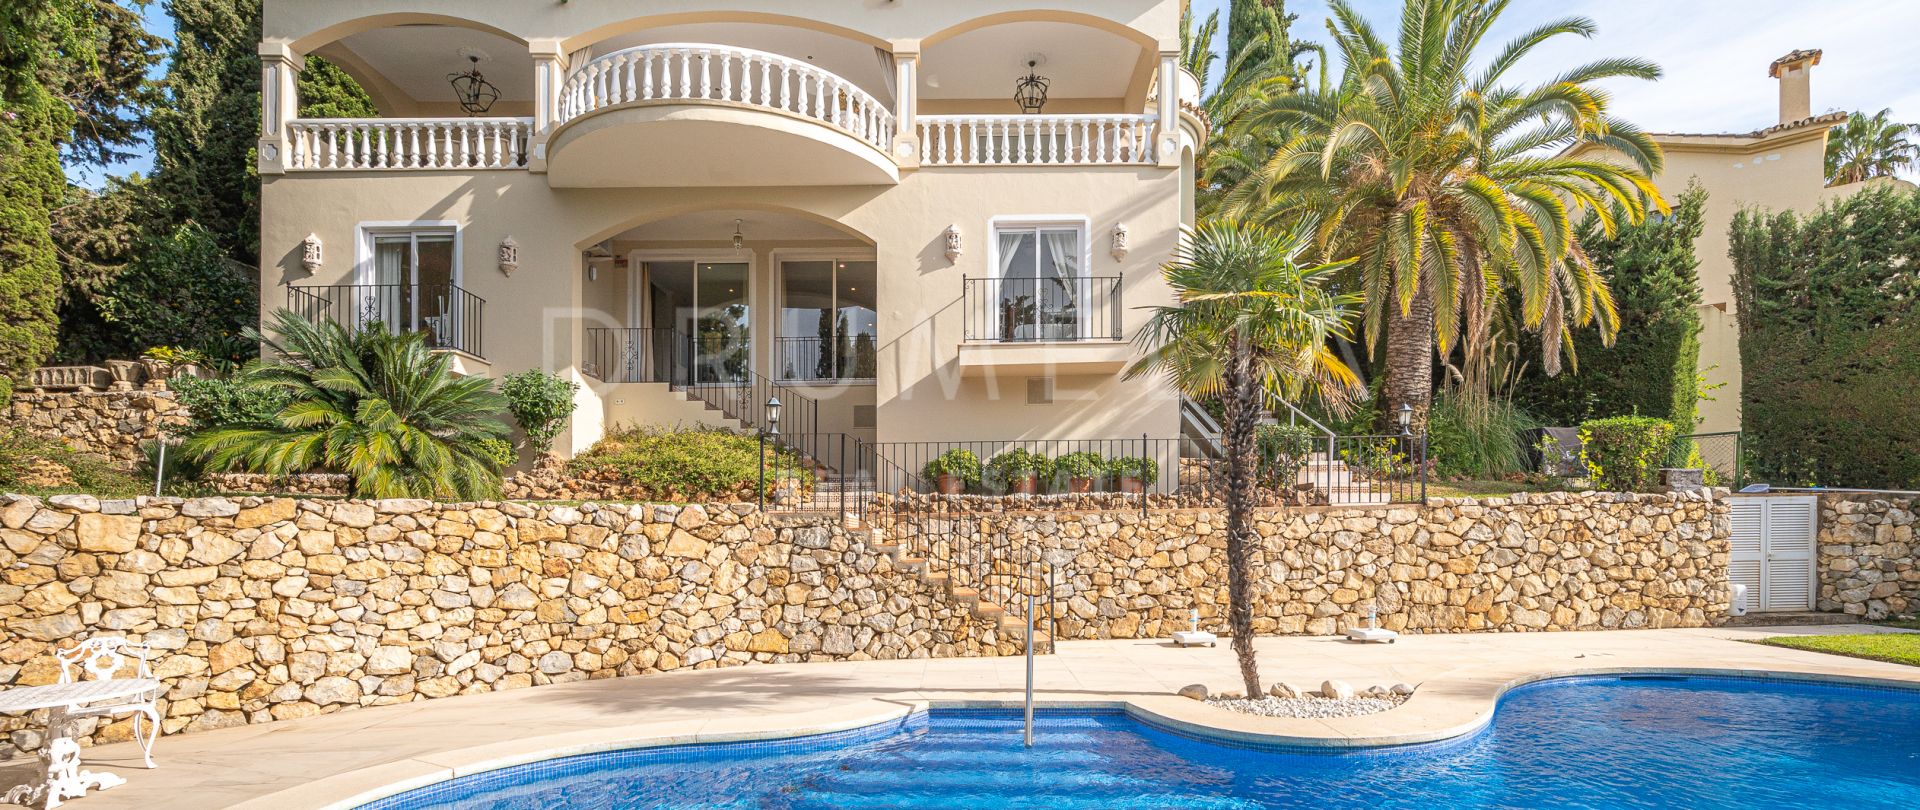 Opmerkelijke klassieke mediterrane luxe villa in Marbella Hill Club, Golden Mile van Marbella